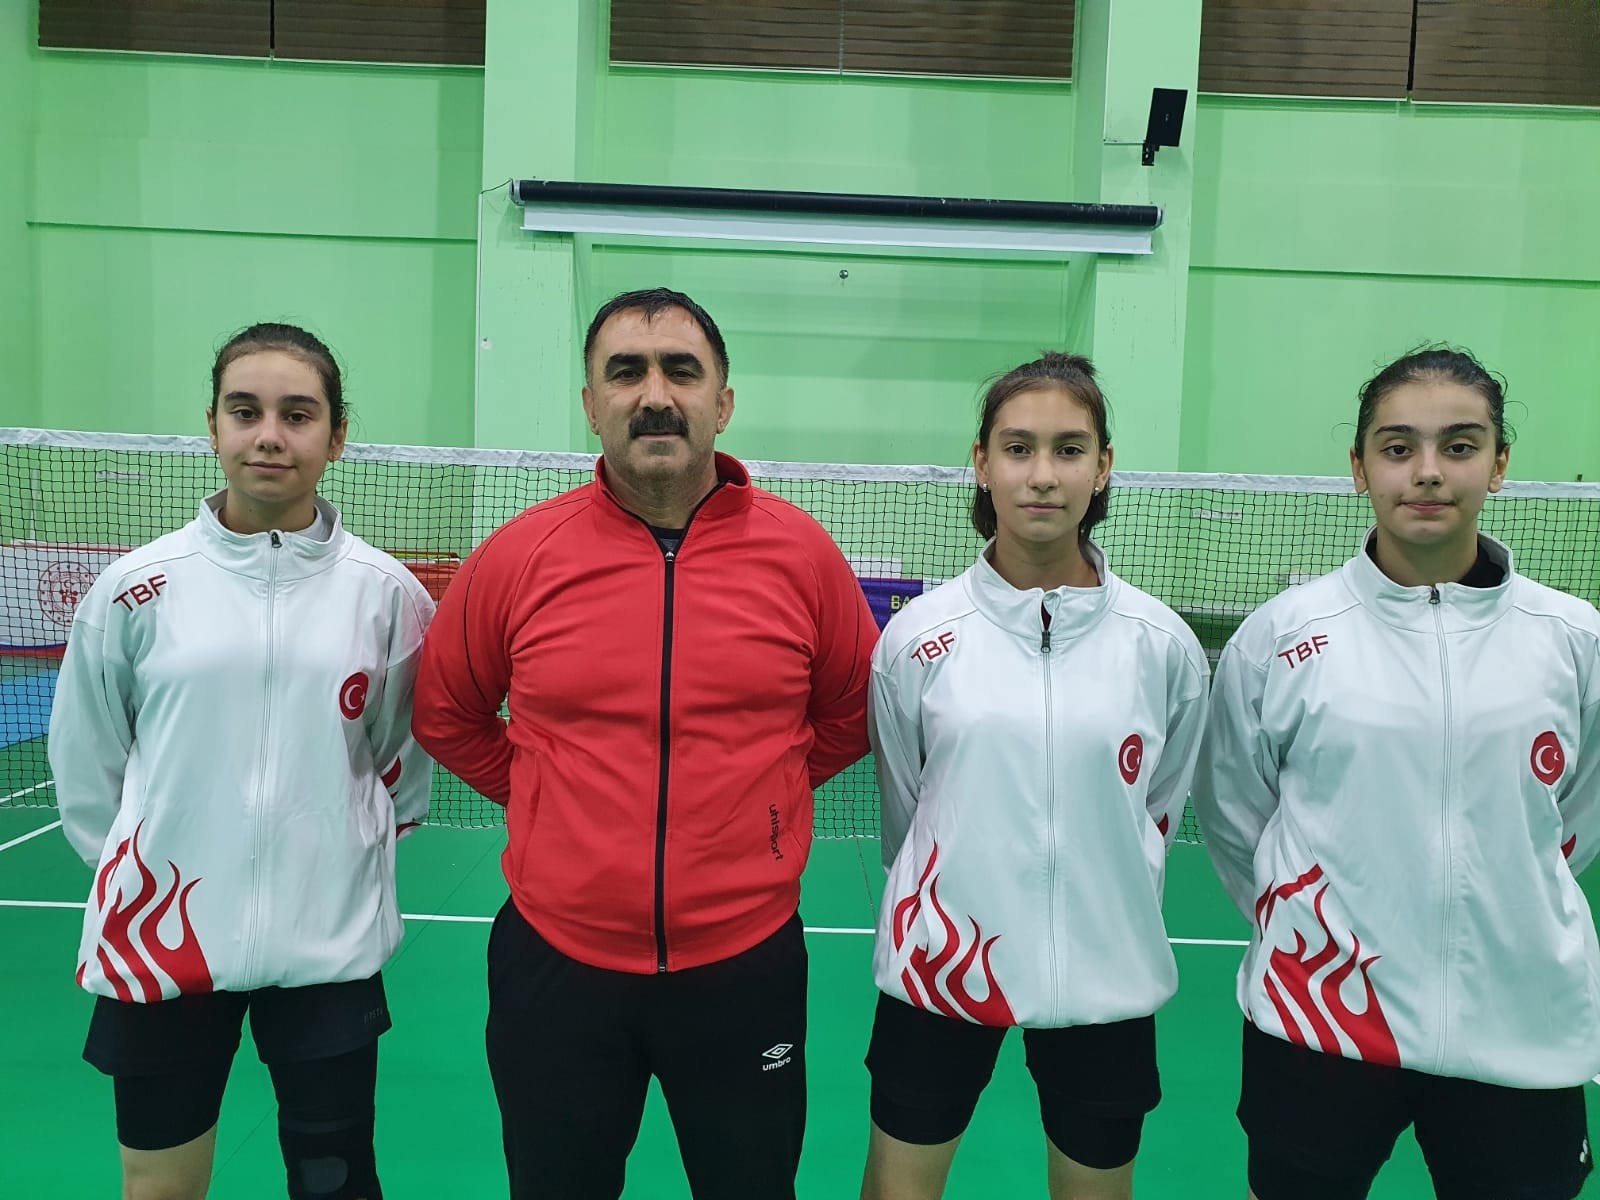 Erzincanlı milli sporcular Hırvatistan’da U 15 Uluslararası Badminton turnuvasına katılacak #erzincan